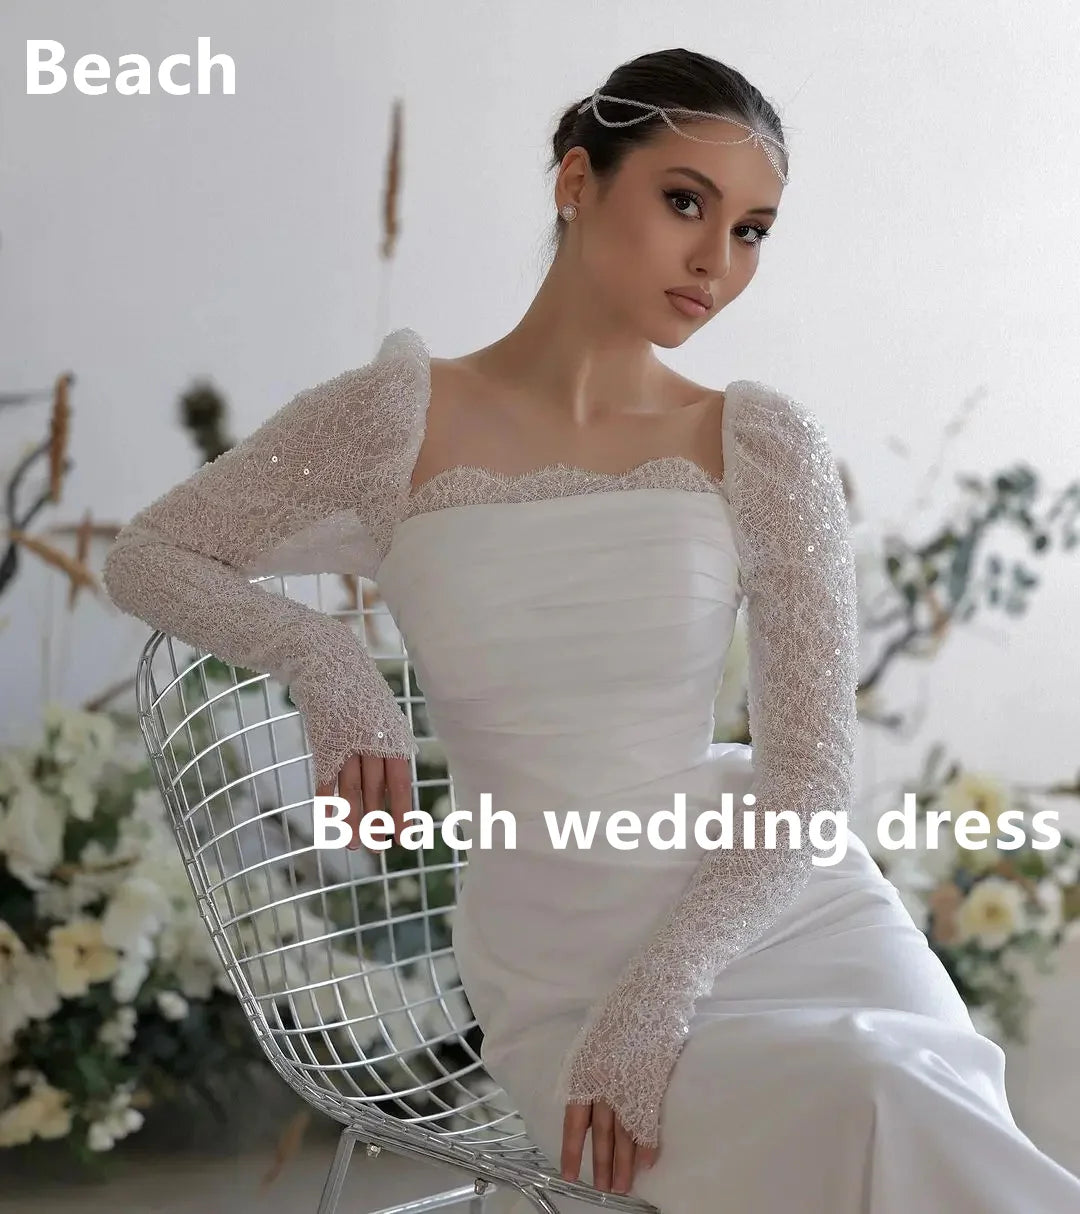 فساتين زفاف بوهيمية نيرميد دانتيل بأكمام طويلة على شكل قلب فستان زفاف رسمي لحفلات الزفاف والسهرة